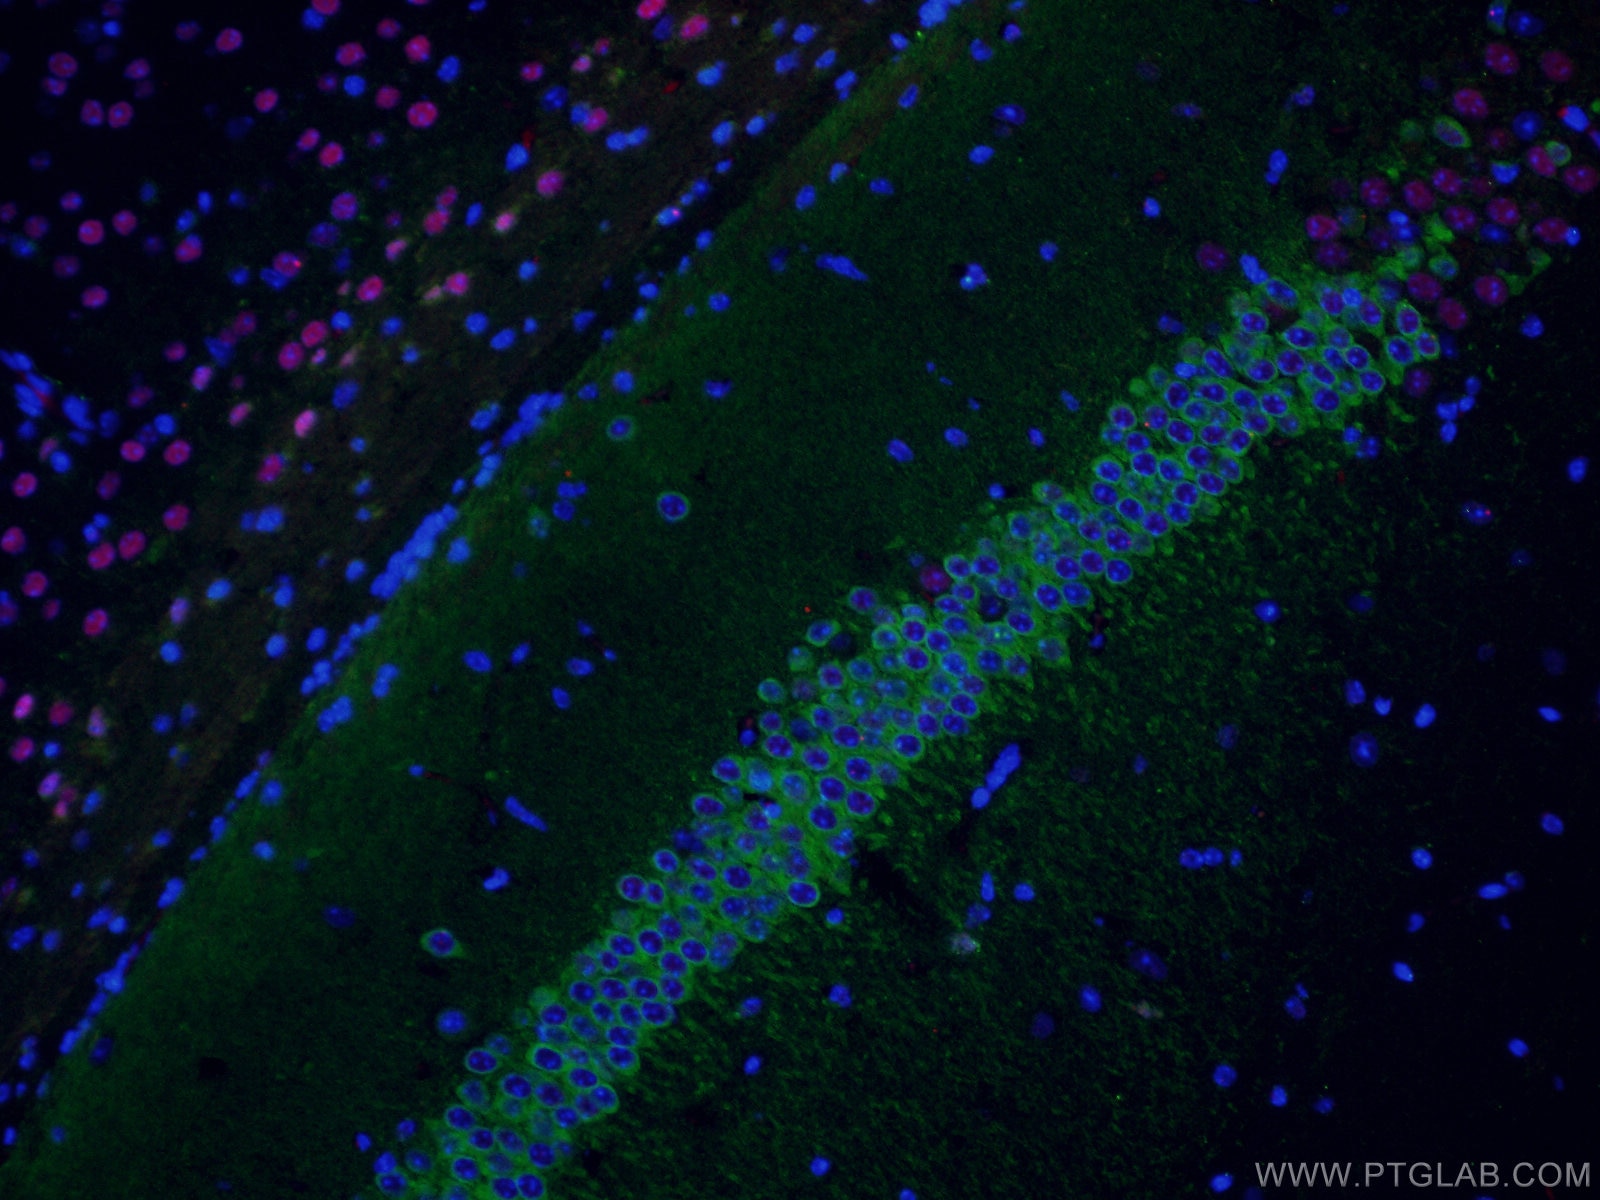 WFS1 Antibody IF mouse brain tissue 11558-1-AP